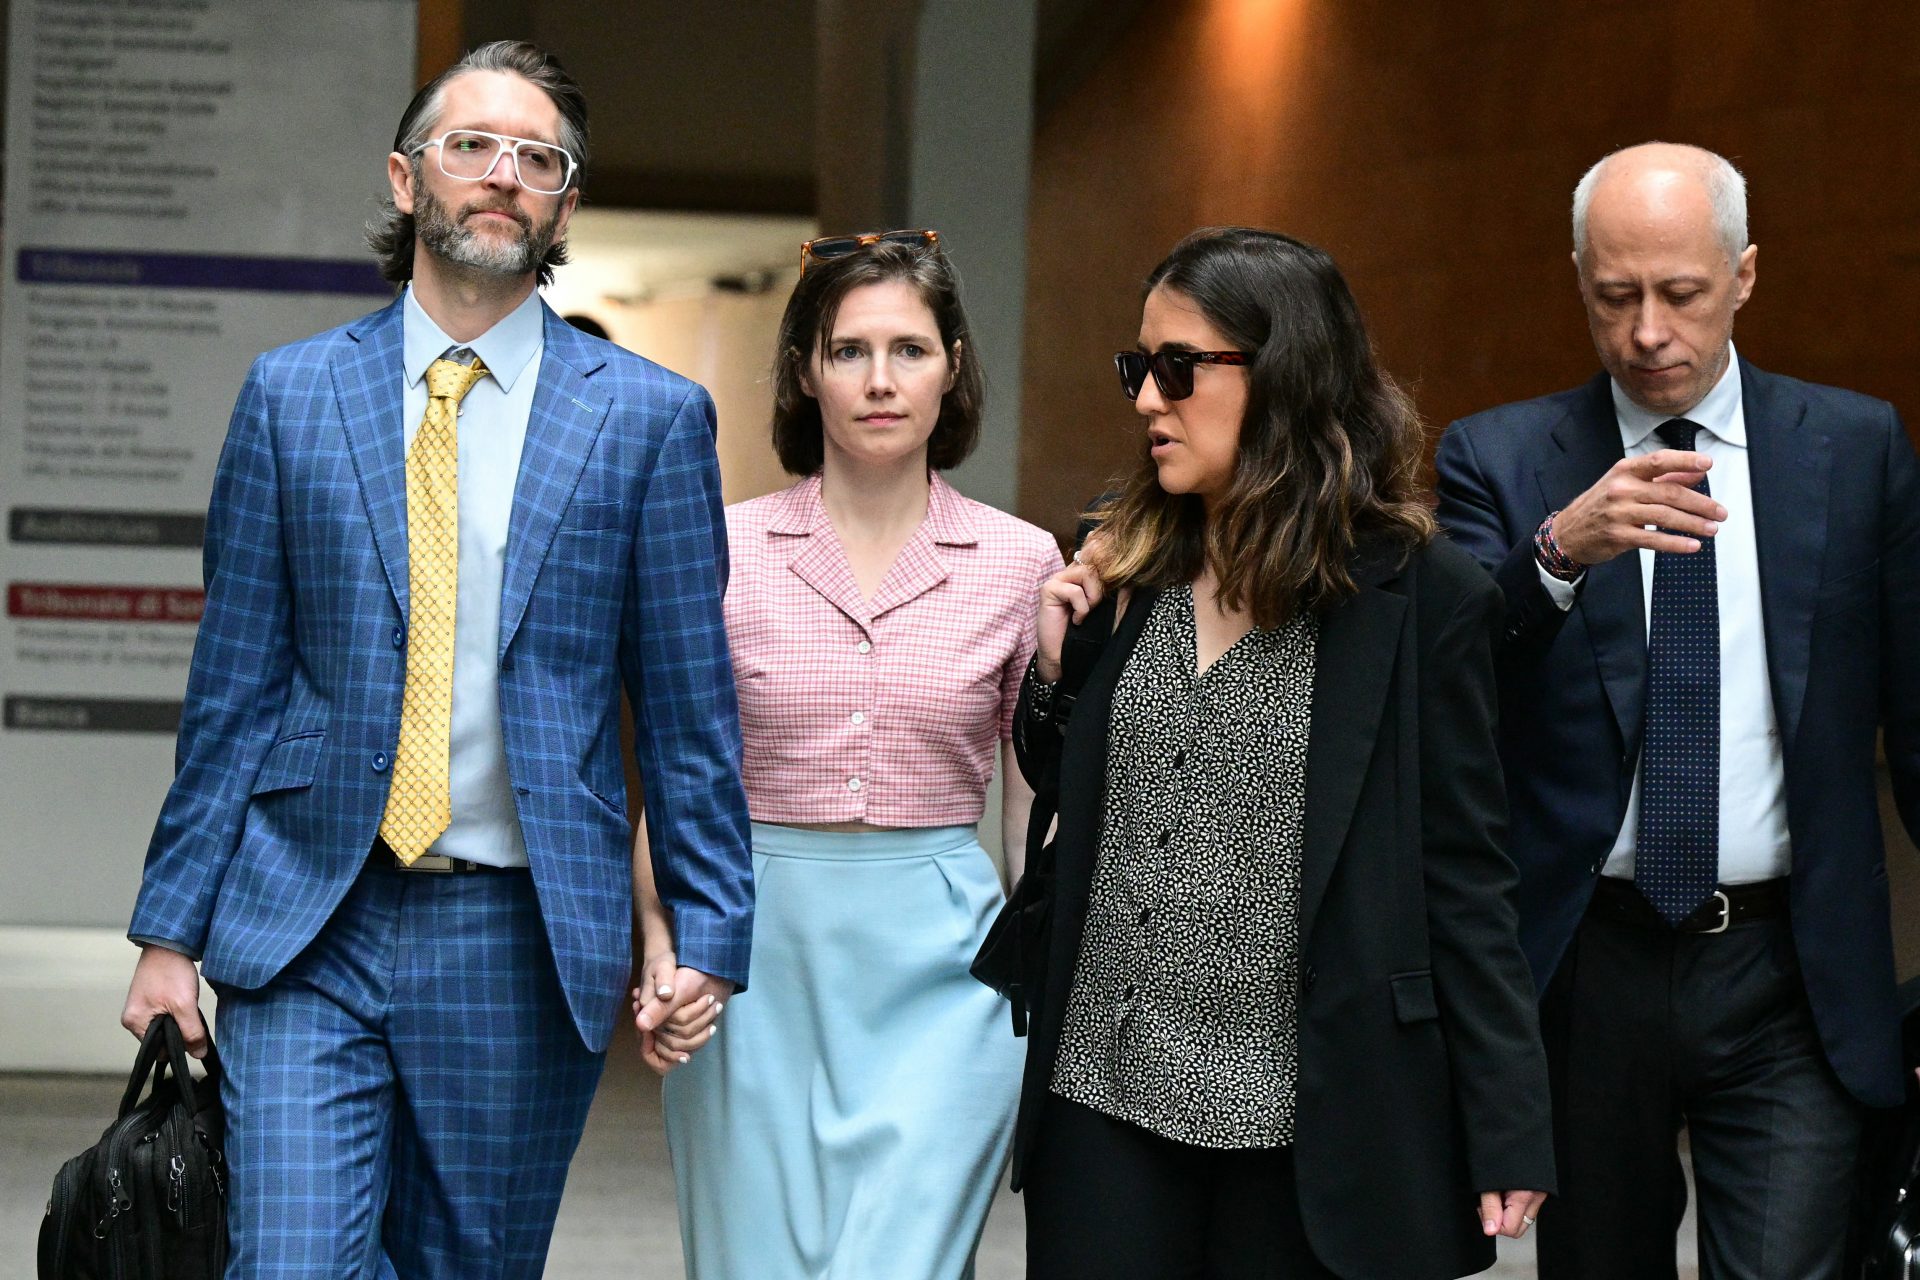 Amanda Knox veroordeeld tot 3 jaar gevangenisstraf voor laster